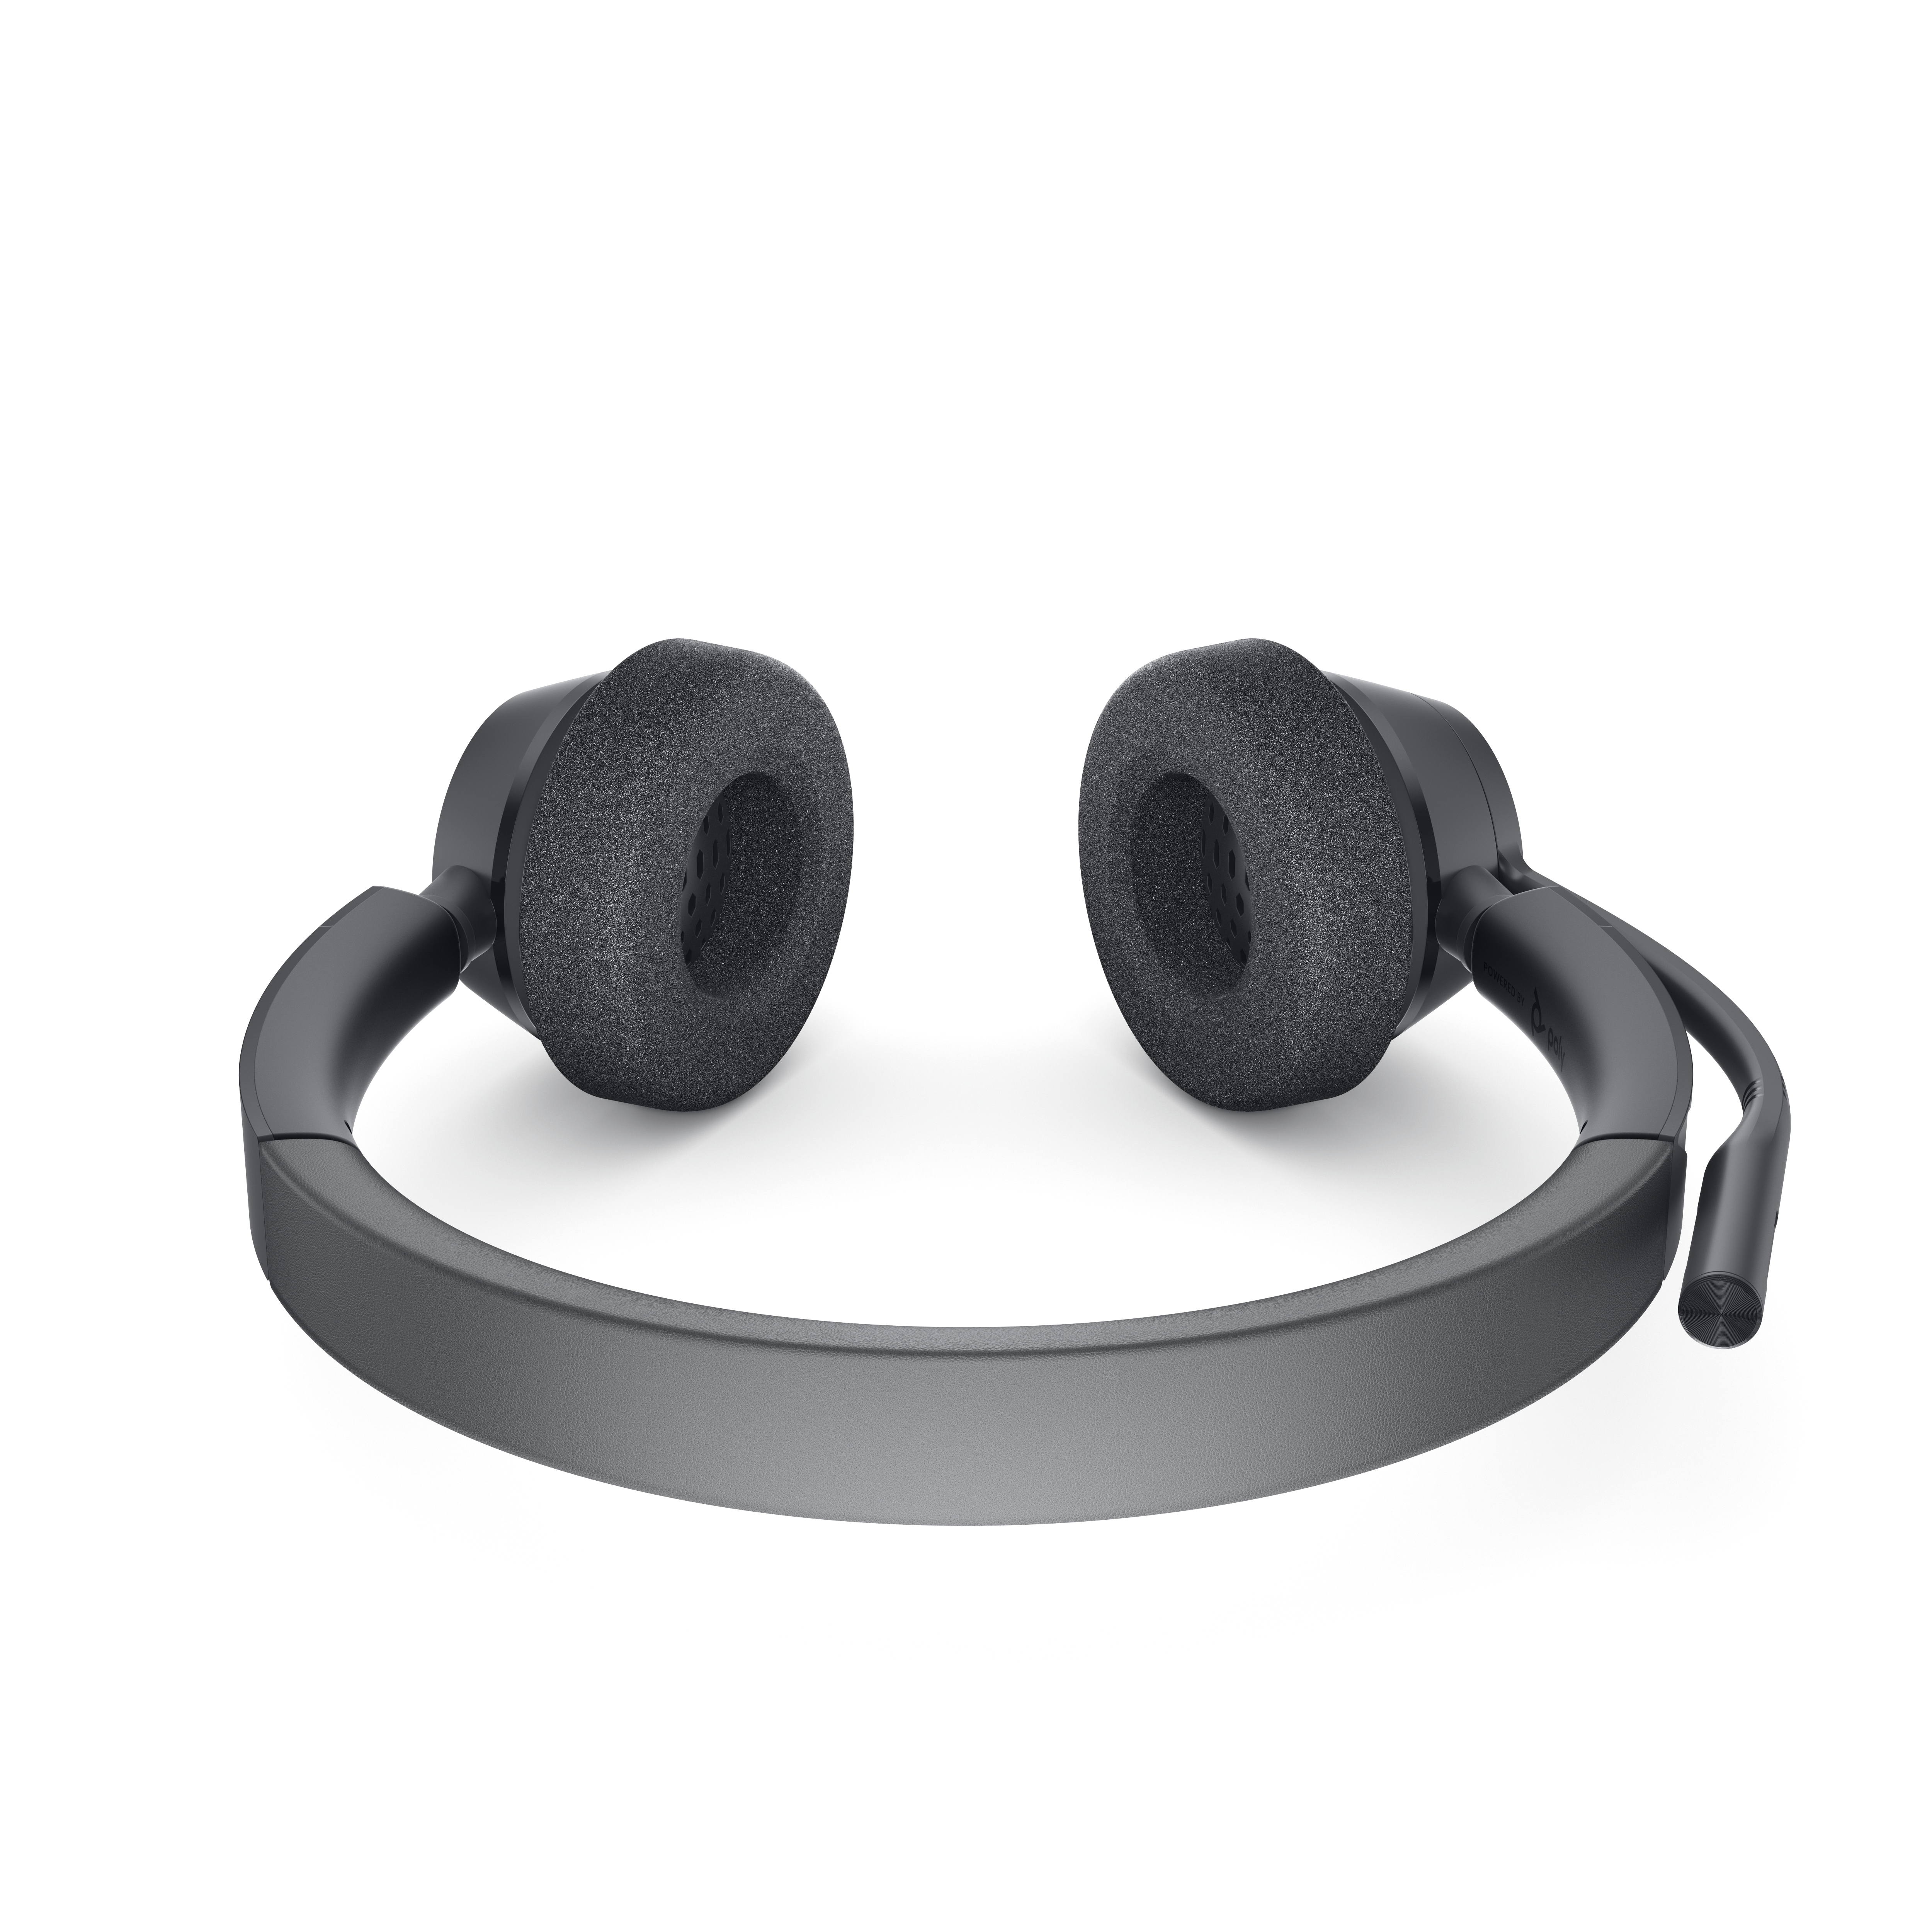 Dell Pro Stereo Headset WH3022 - Headset - kabelgebunden